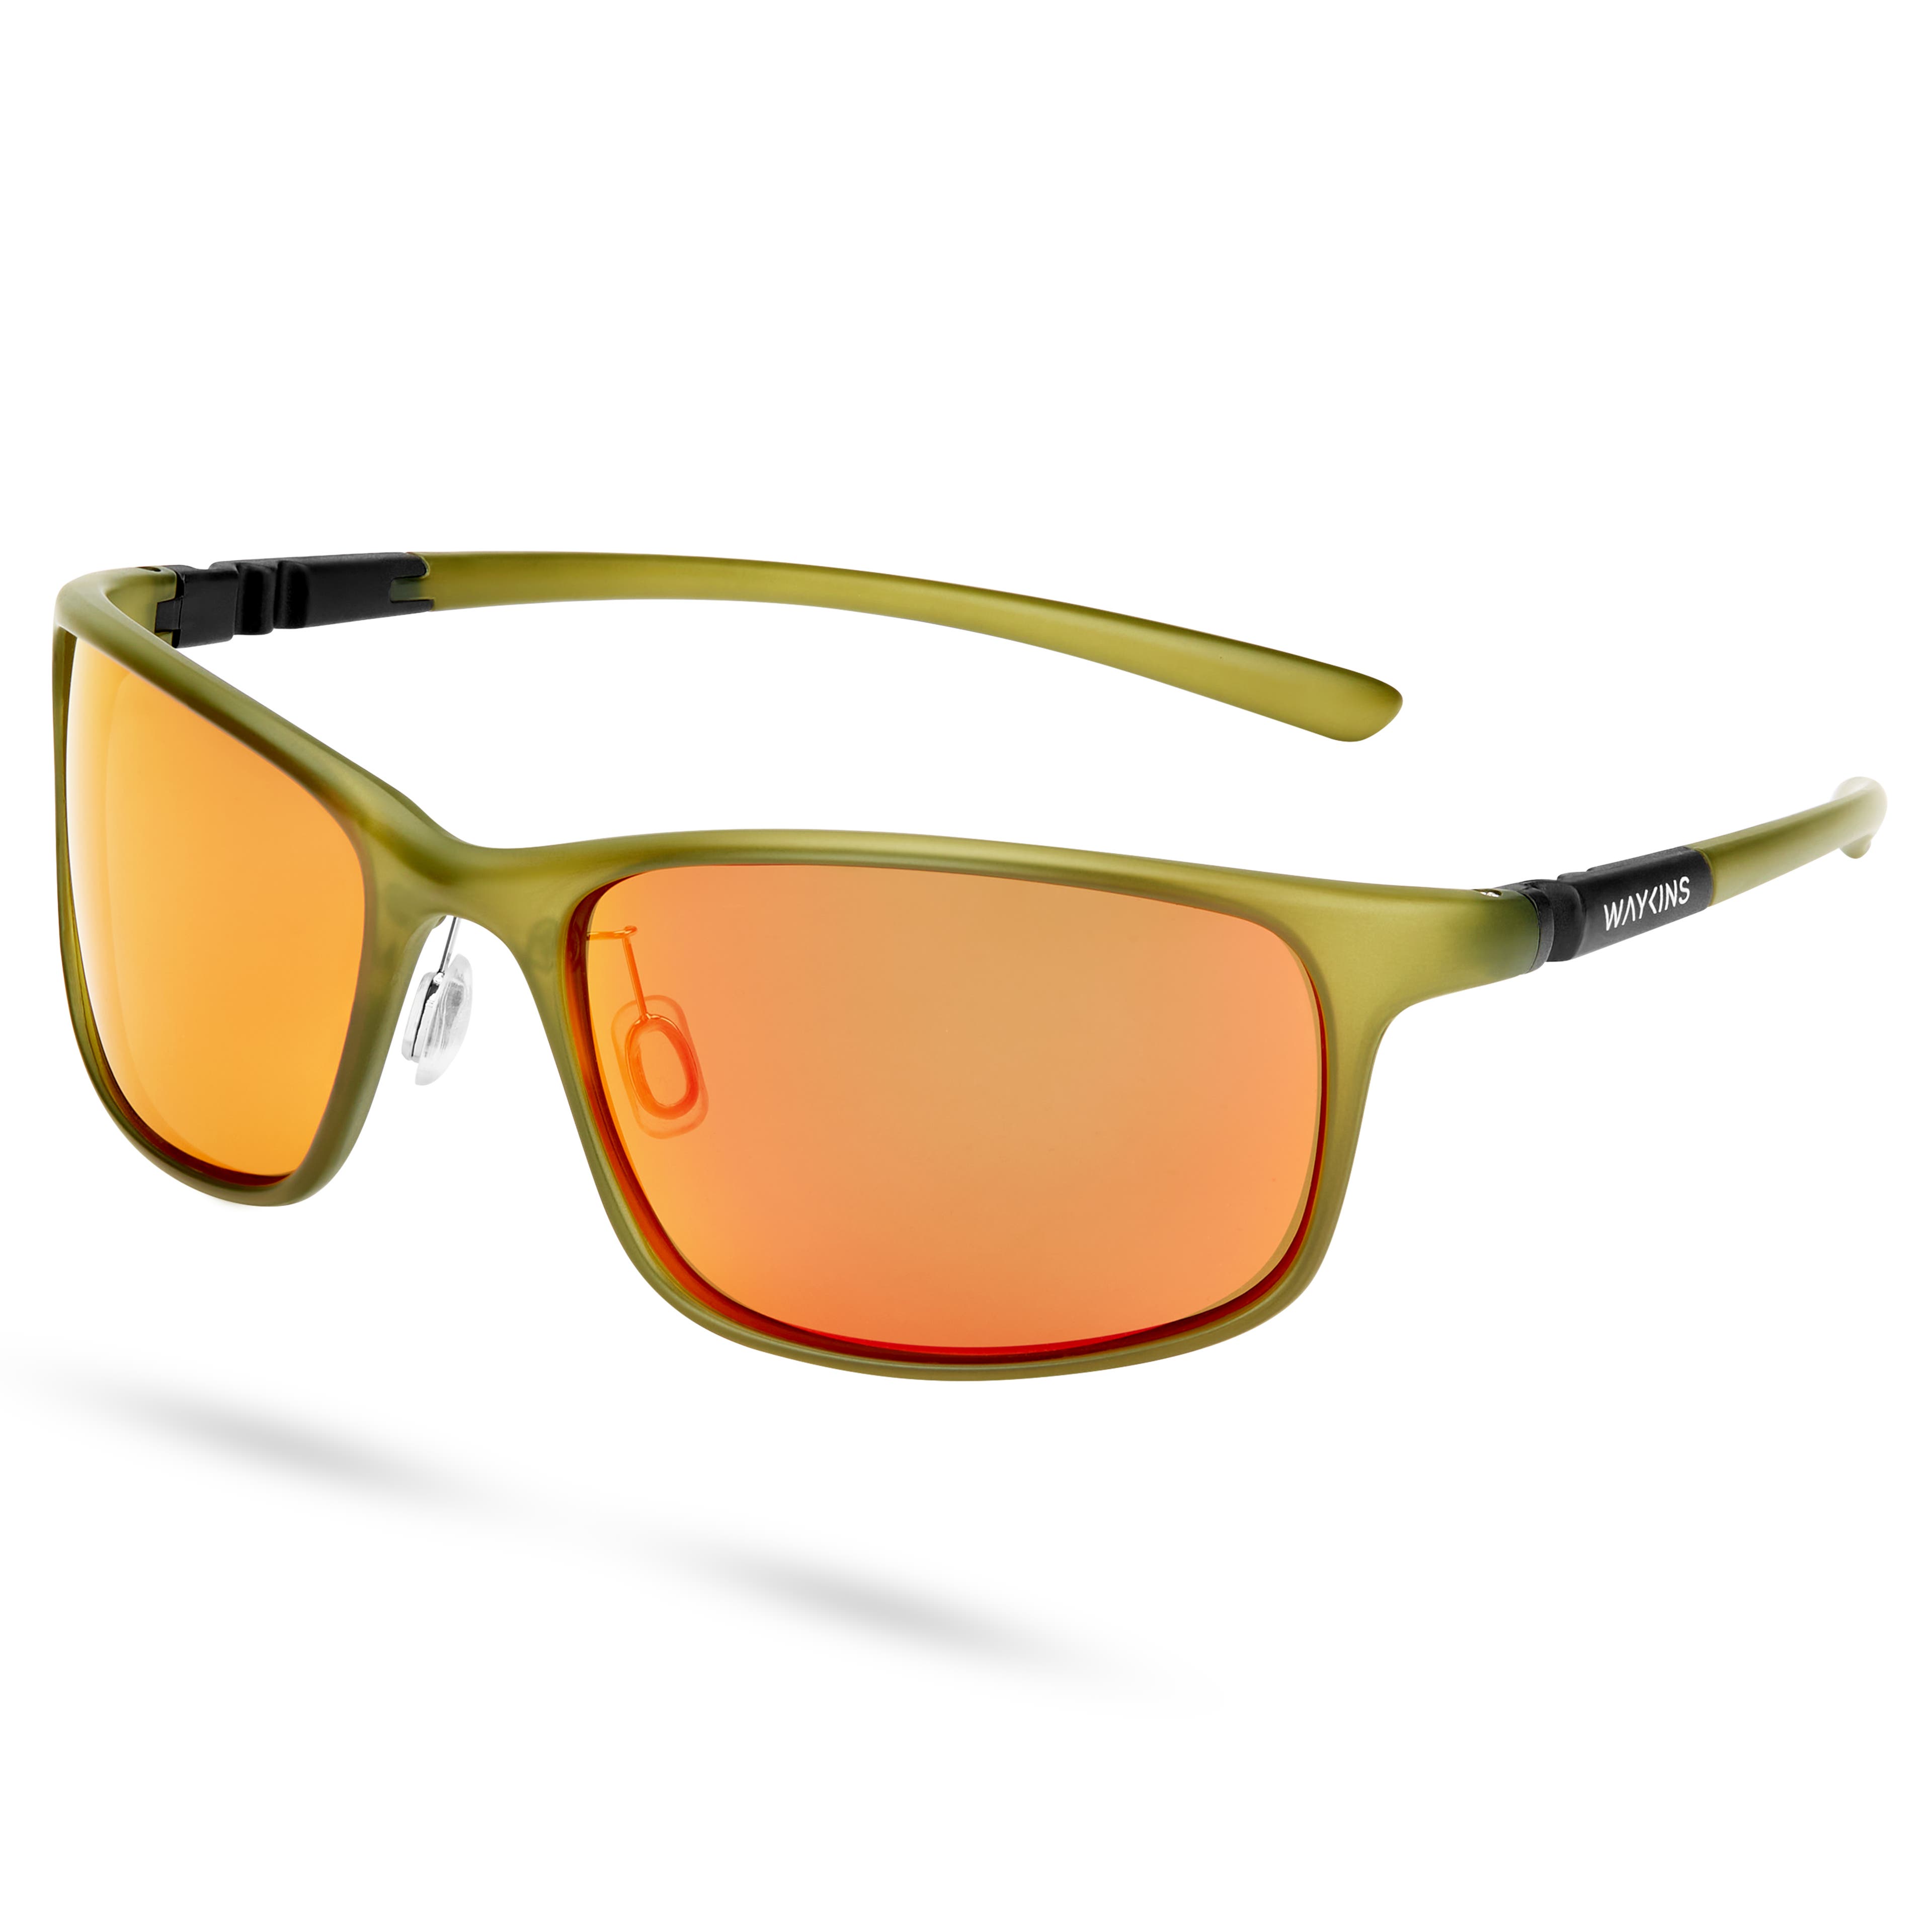 Zelené športové slnečné okuliare Premium